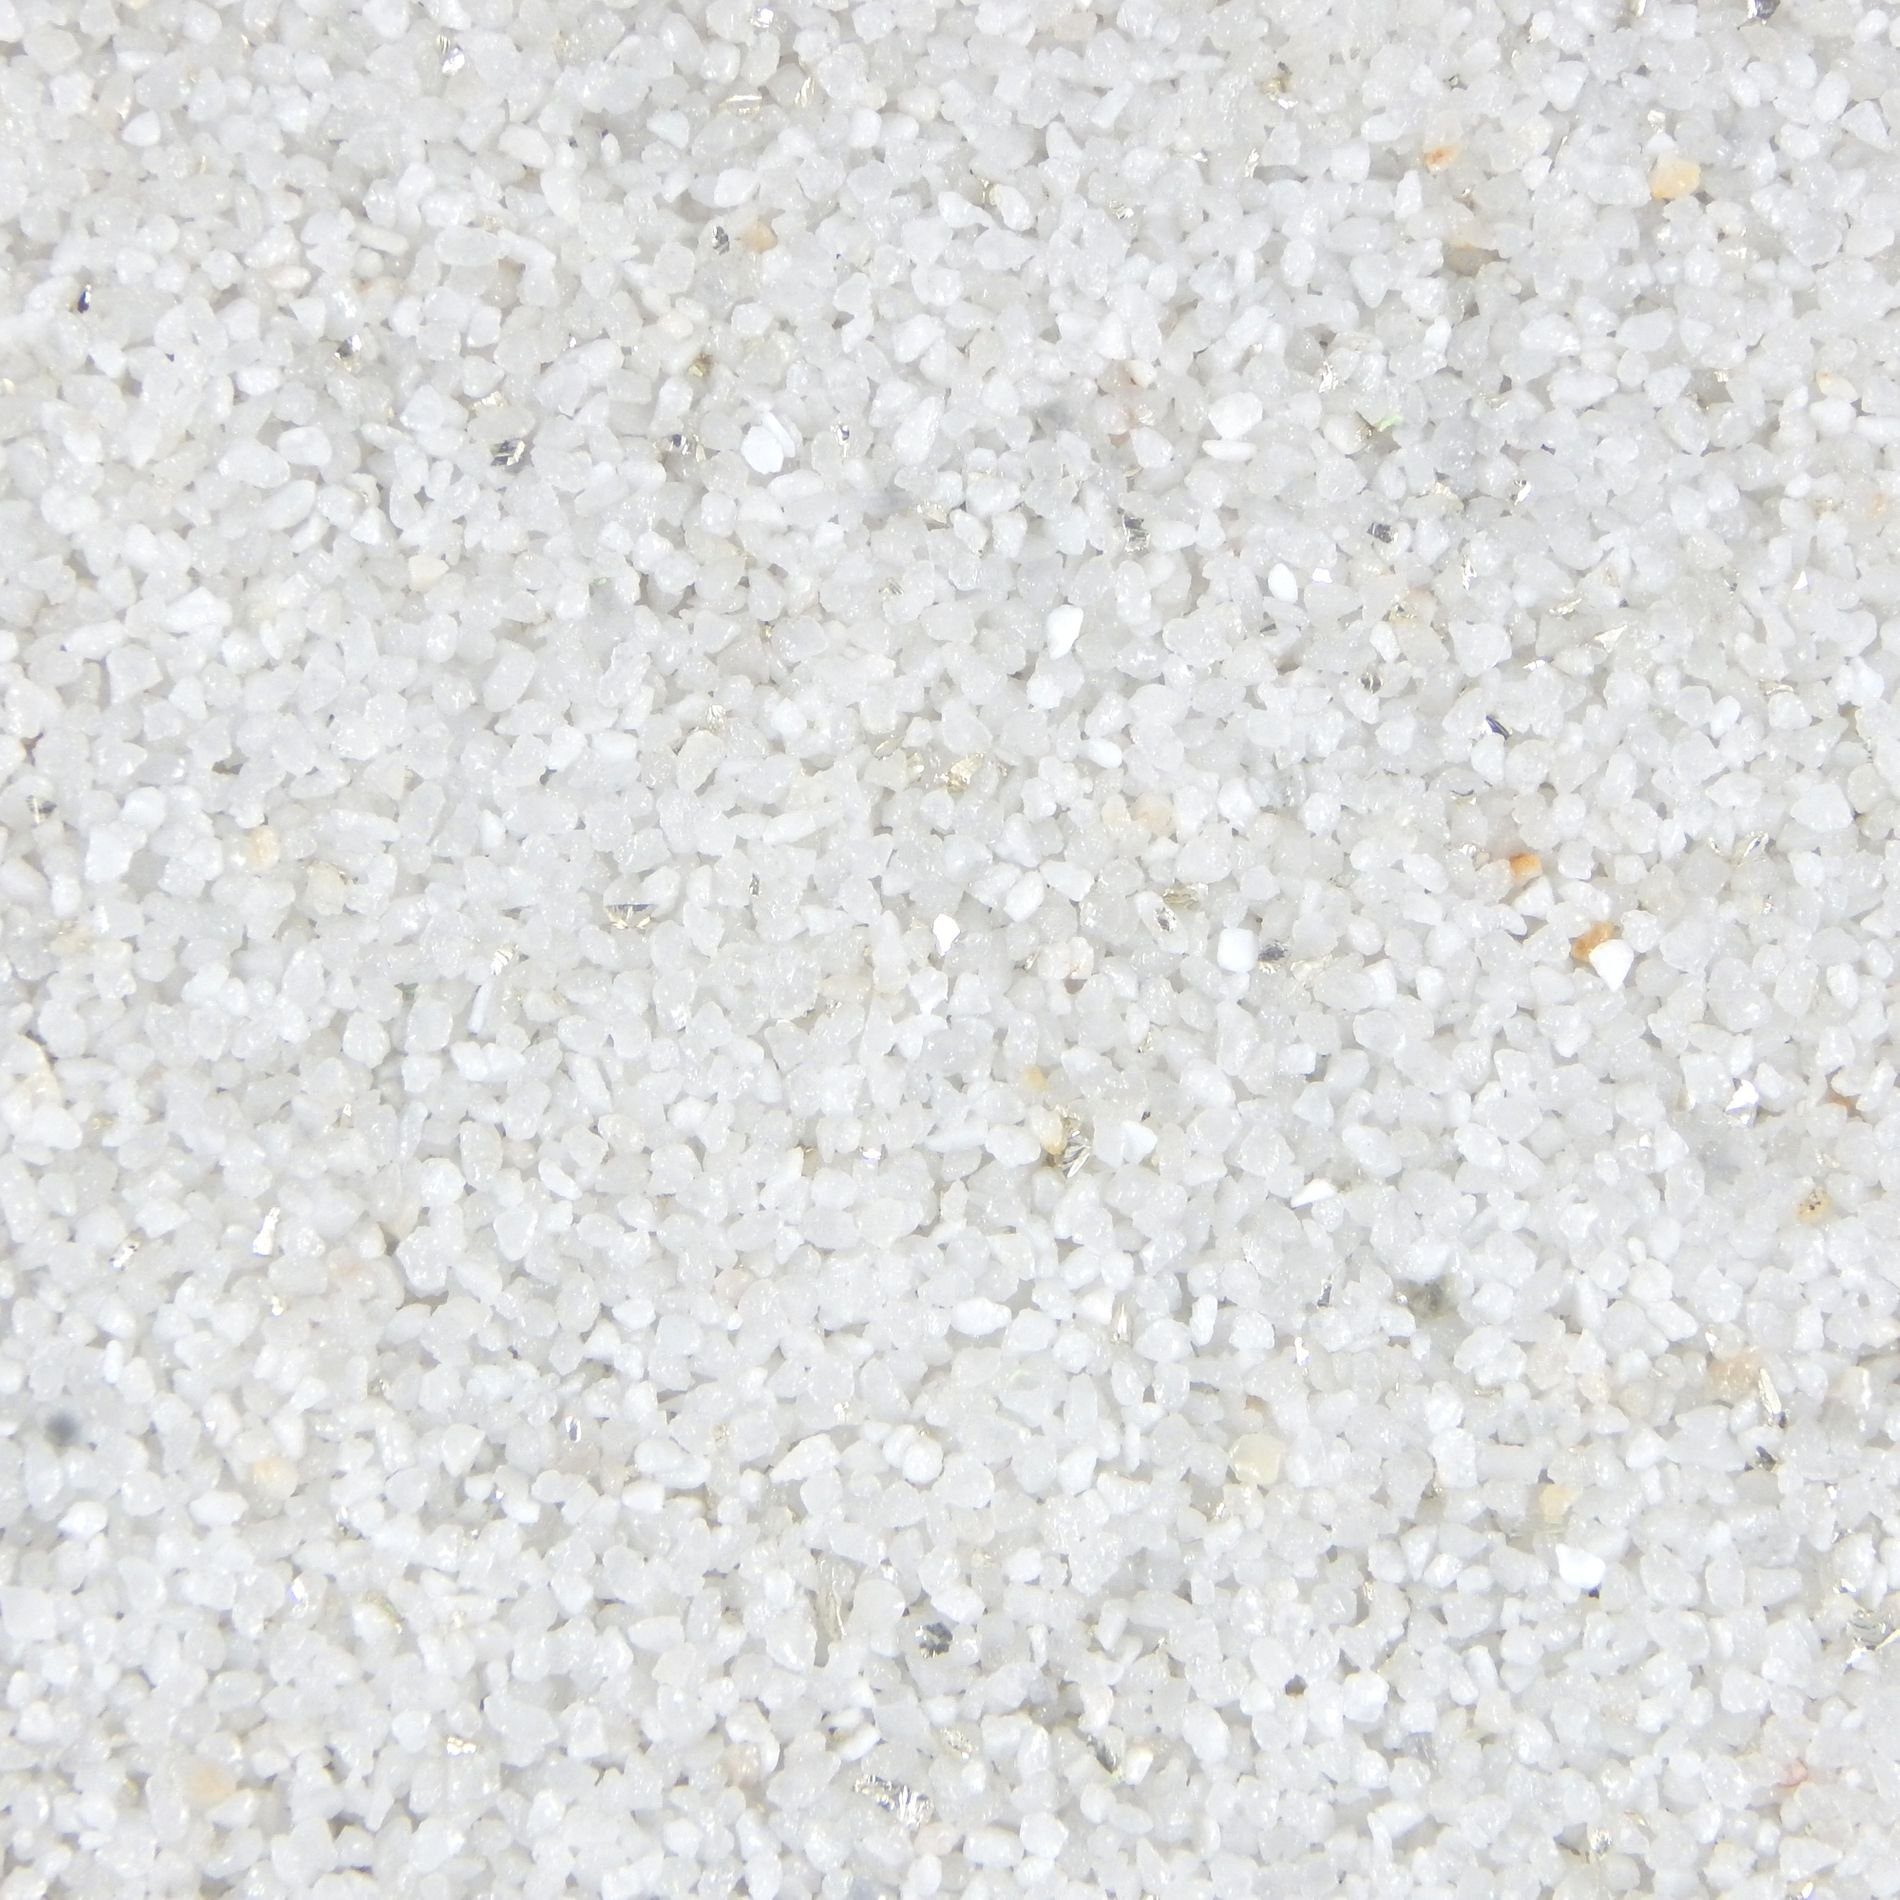 Terralith® Kunstharzputz Buntsteinputz Mosaikputz 2mm -15 kg- T124 (Eimer, Verarbeitungsfertig) Dekorationsputz aus Marmor-Granulat bzw. eingefärbter Körnung mit einem Reinacrylat als Bindemittel